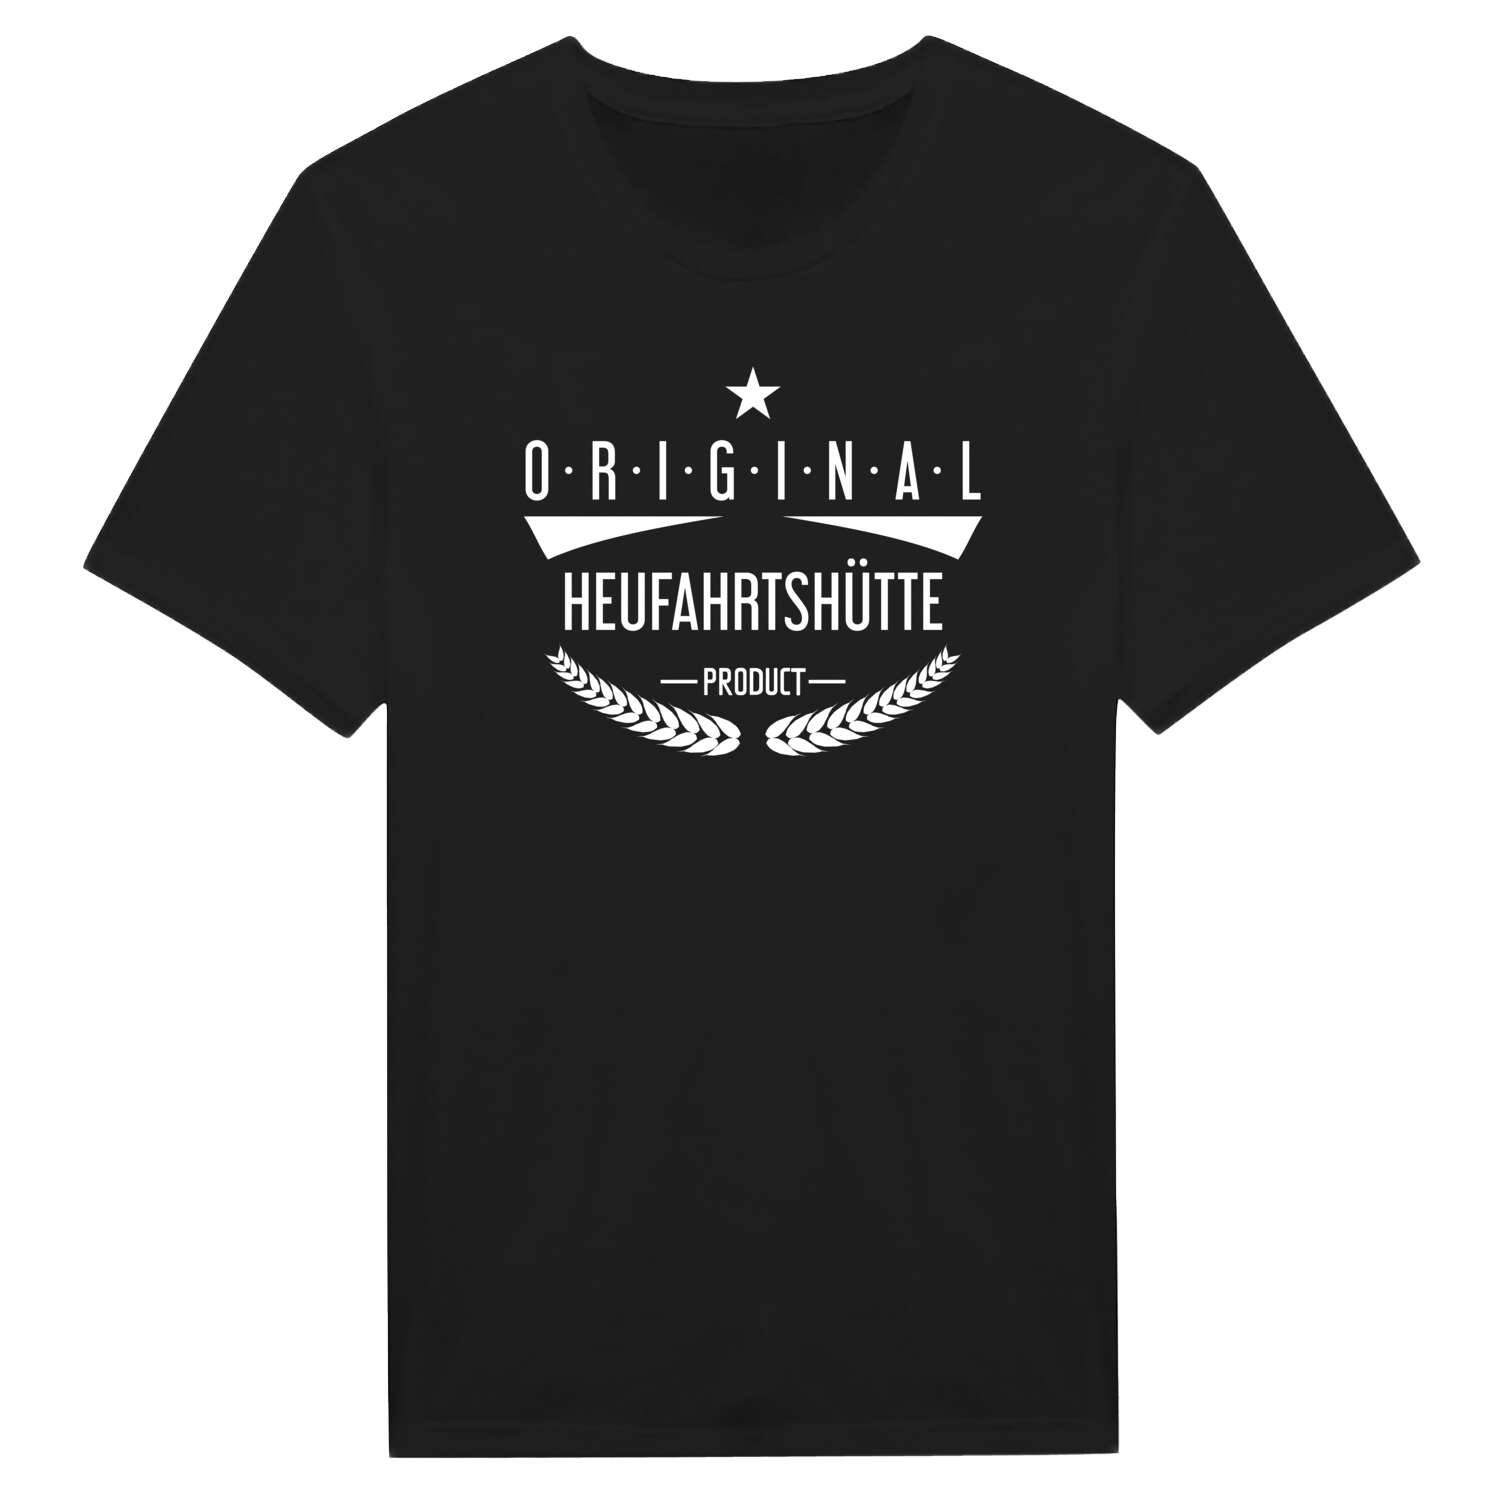 Heufahrtshütte T-Shirt »Original Product«